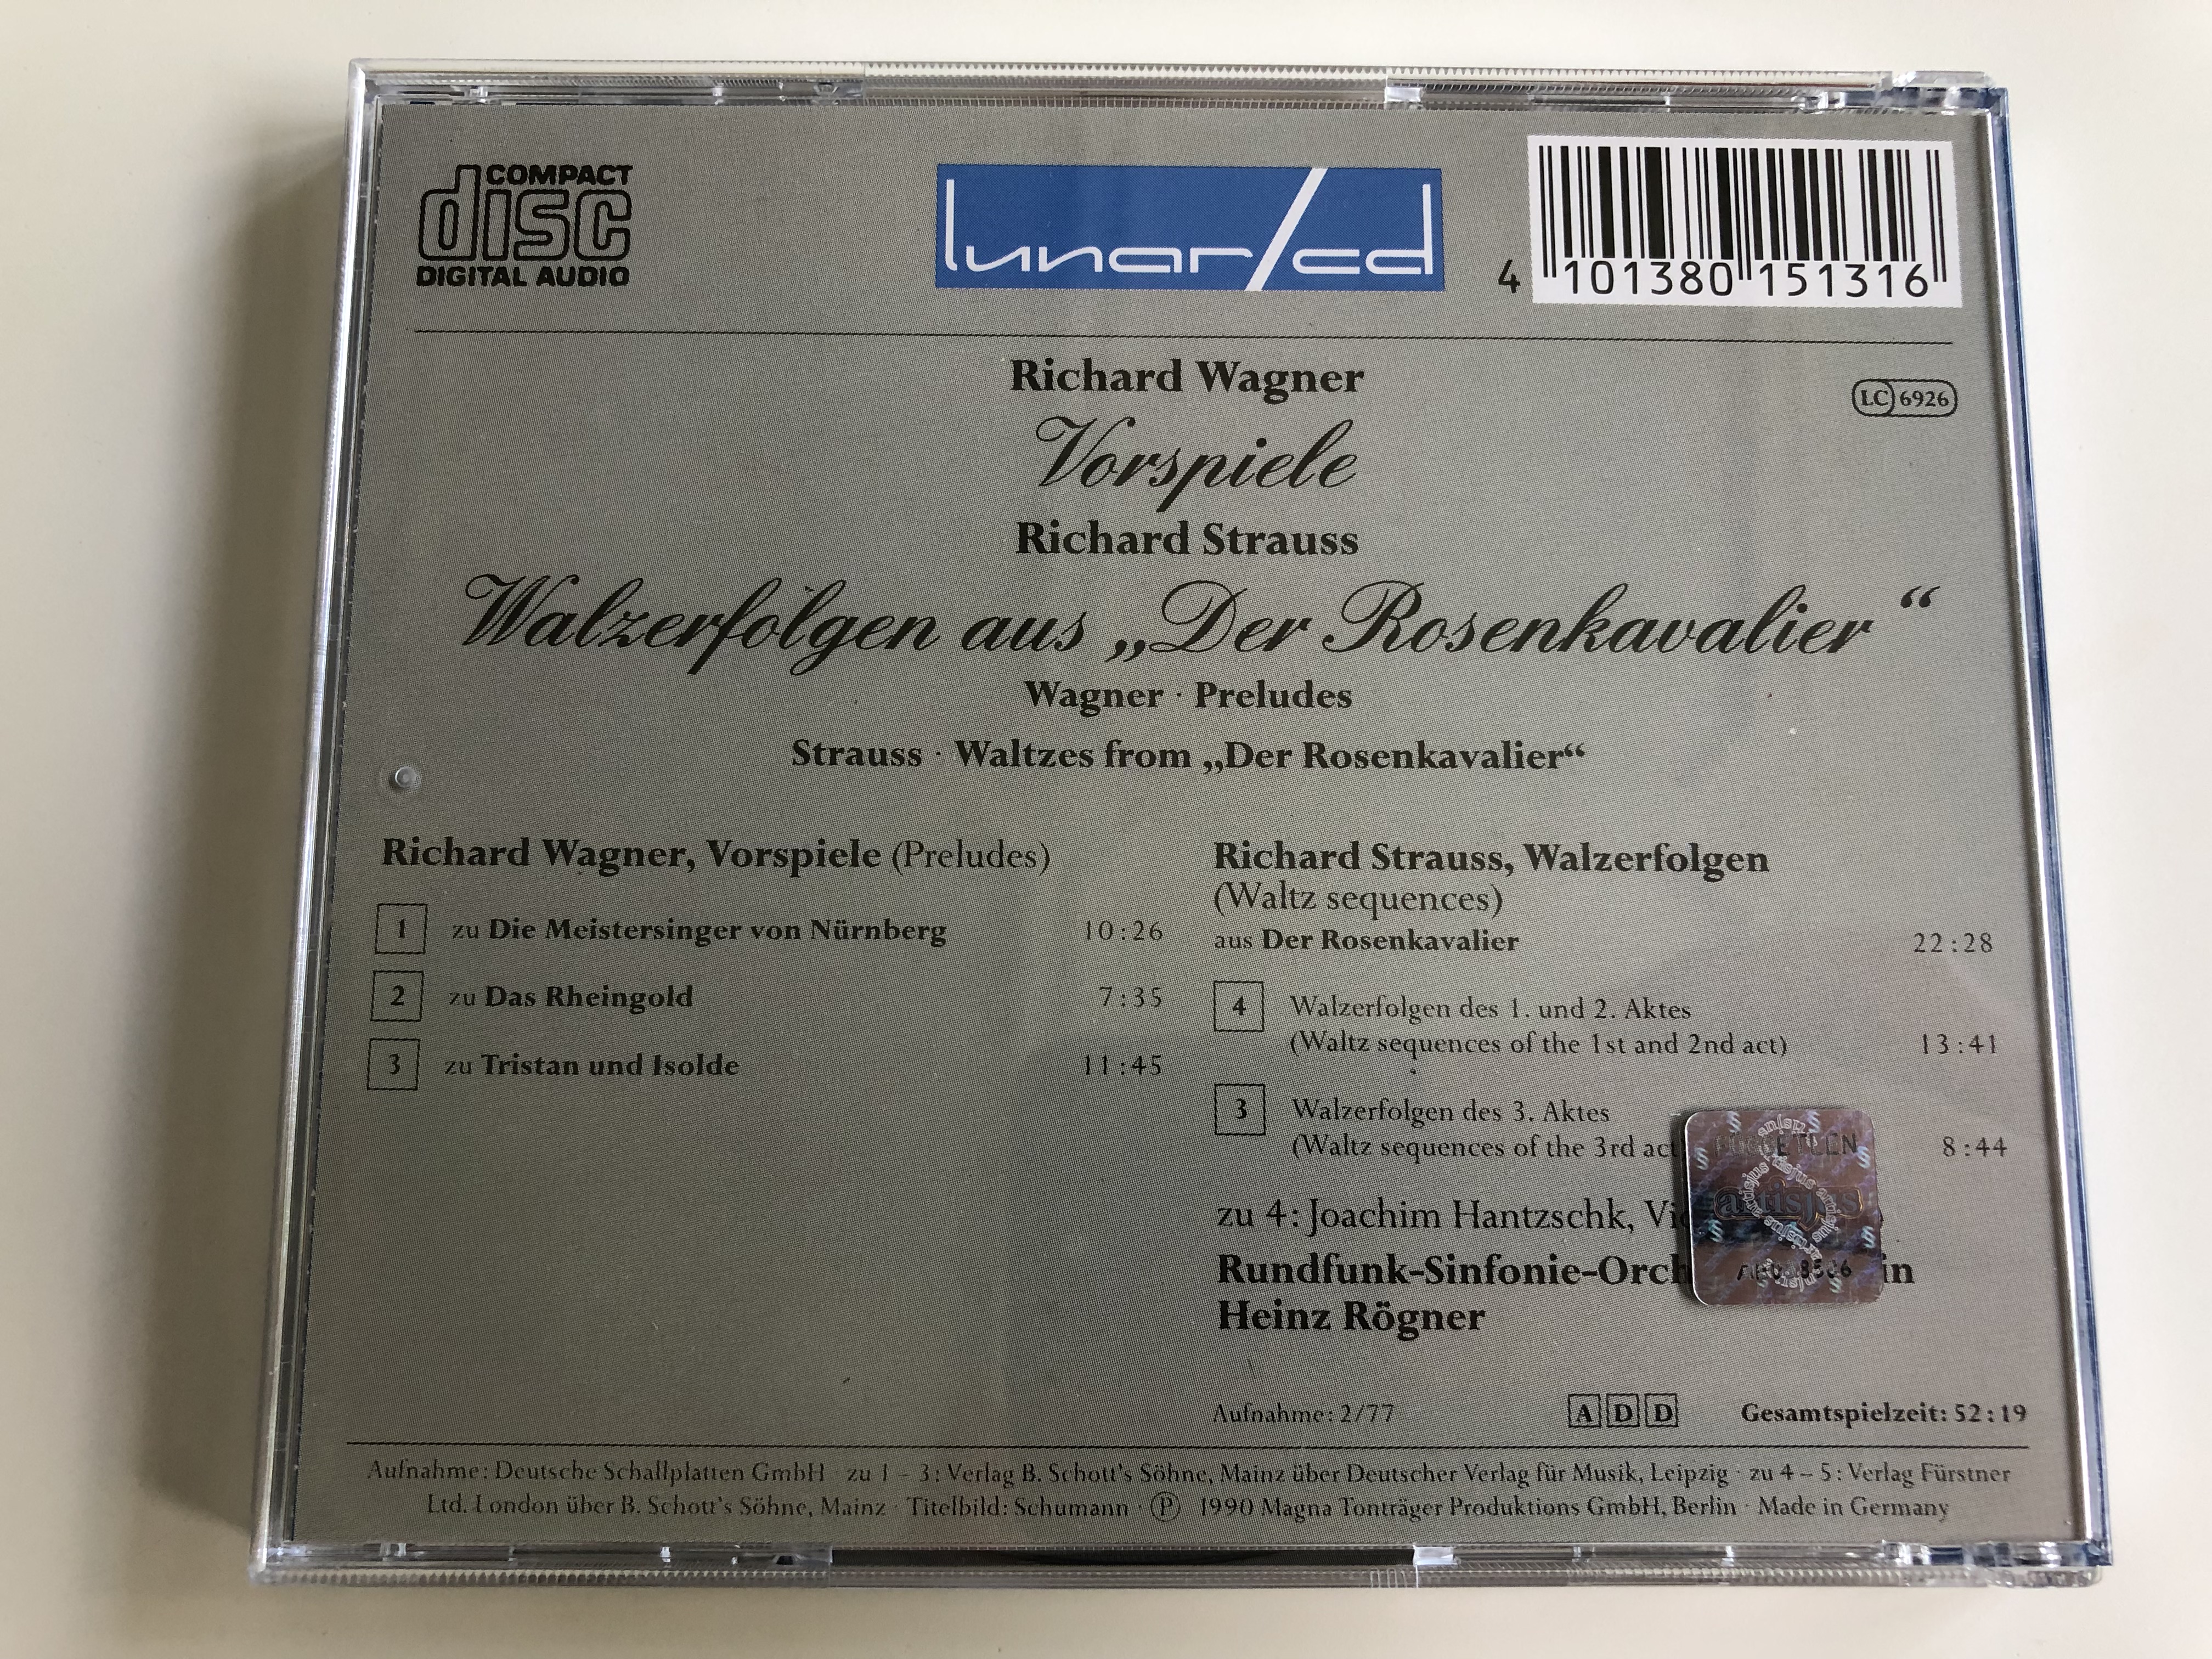 richard-wagner-vorspiele-richard-strauss-walzer-aus-der-rosenkavalier-wagner-preludes-joachim-hantzschk-violin-rundfunk-sinfonie-orchester-berlin-conducted-by-heinz-r-gner-audio-cd-1990-4-.jpg